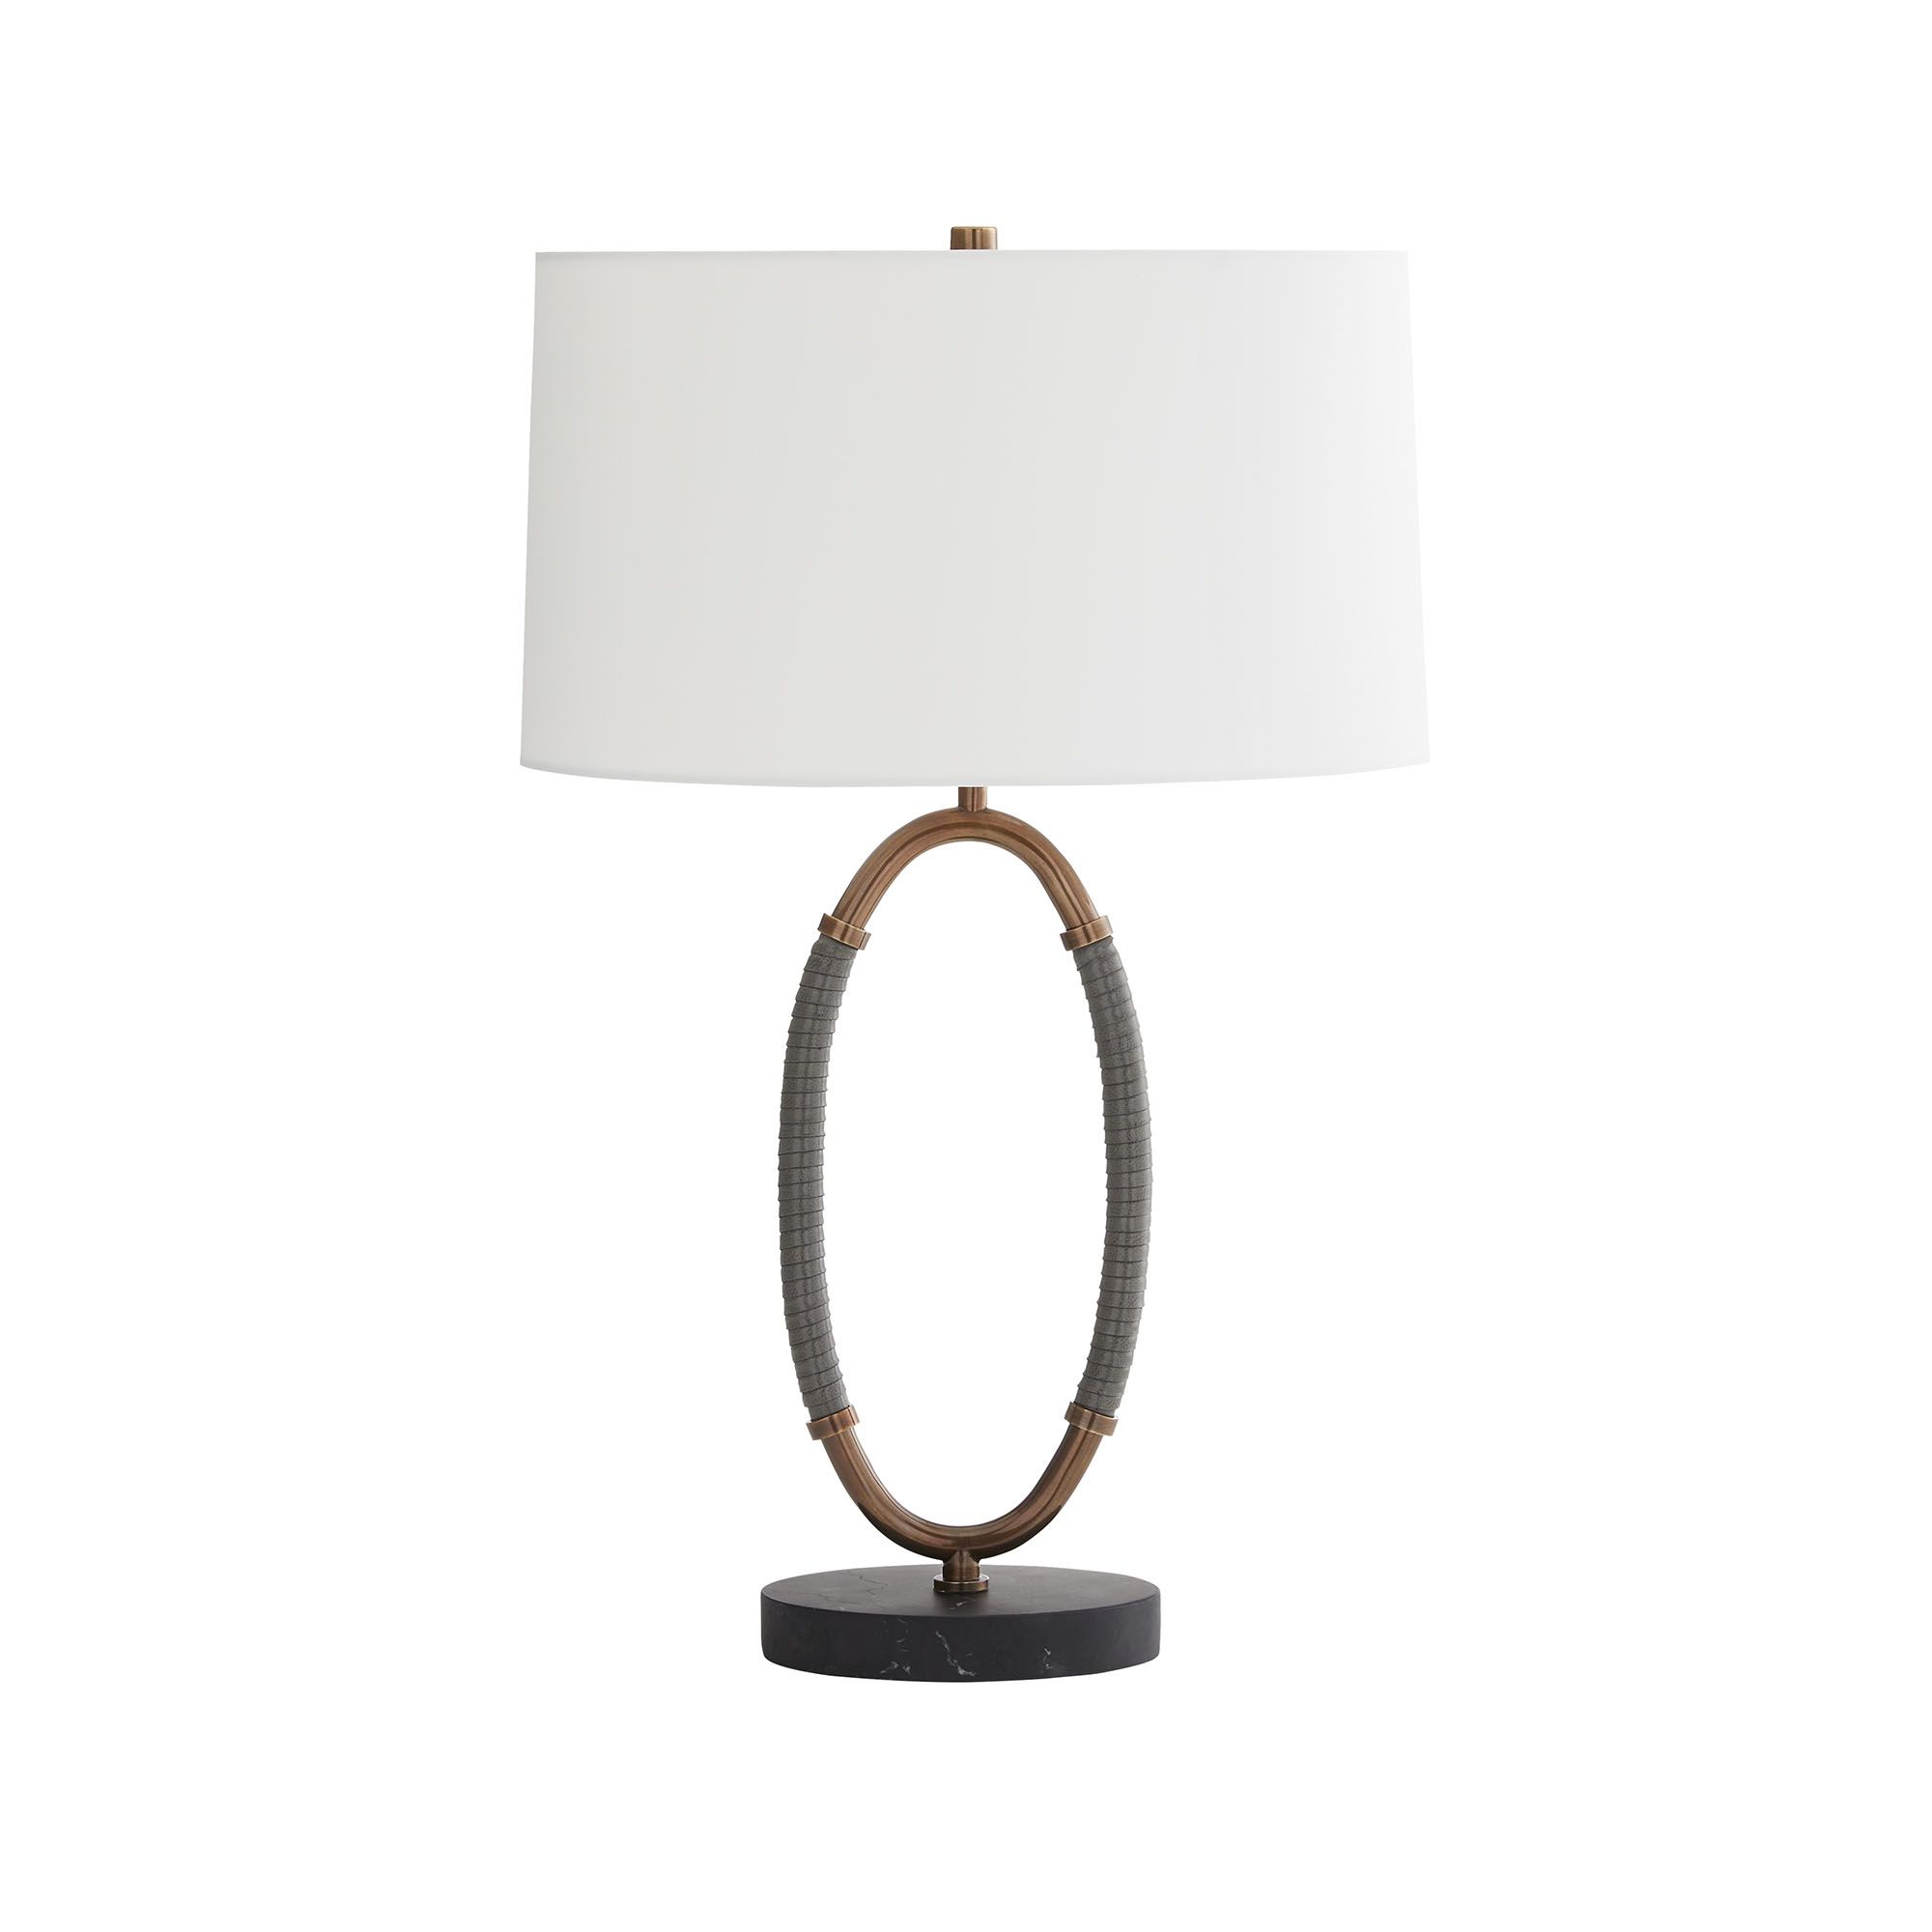 Купить Настольная лампа Landon Lamp в интернет-магазине roooms.ru